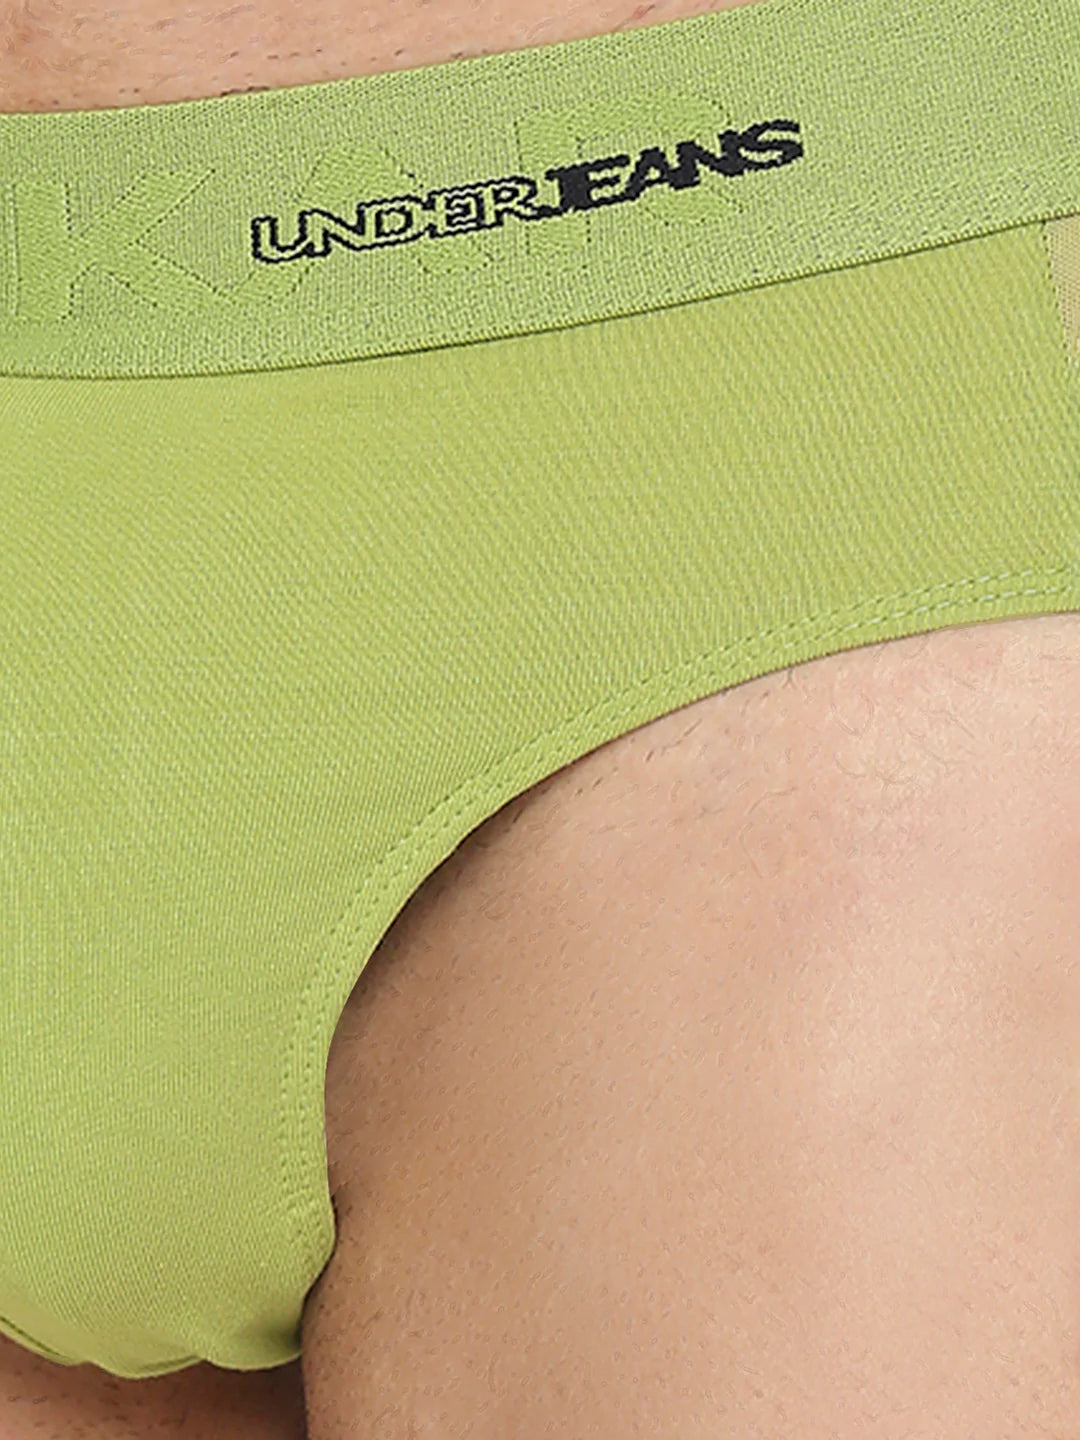 Underjeans by Spykar Men Premium Bright Green Cotton Blend Brief